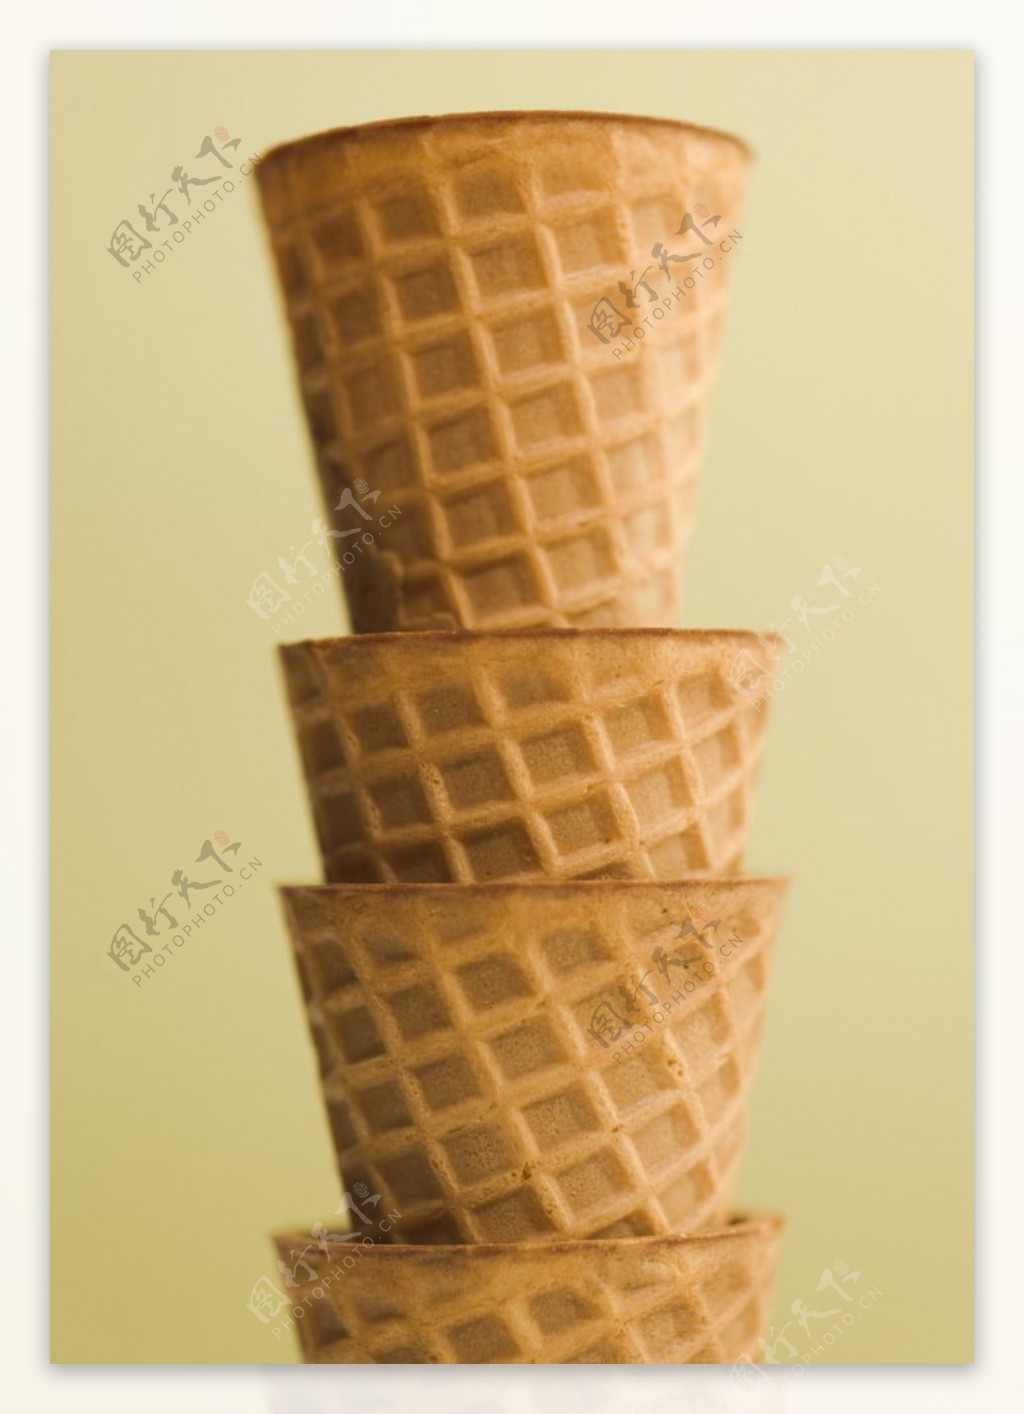 冰激凌甜品图片